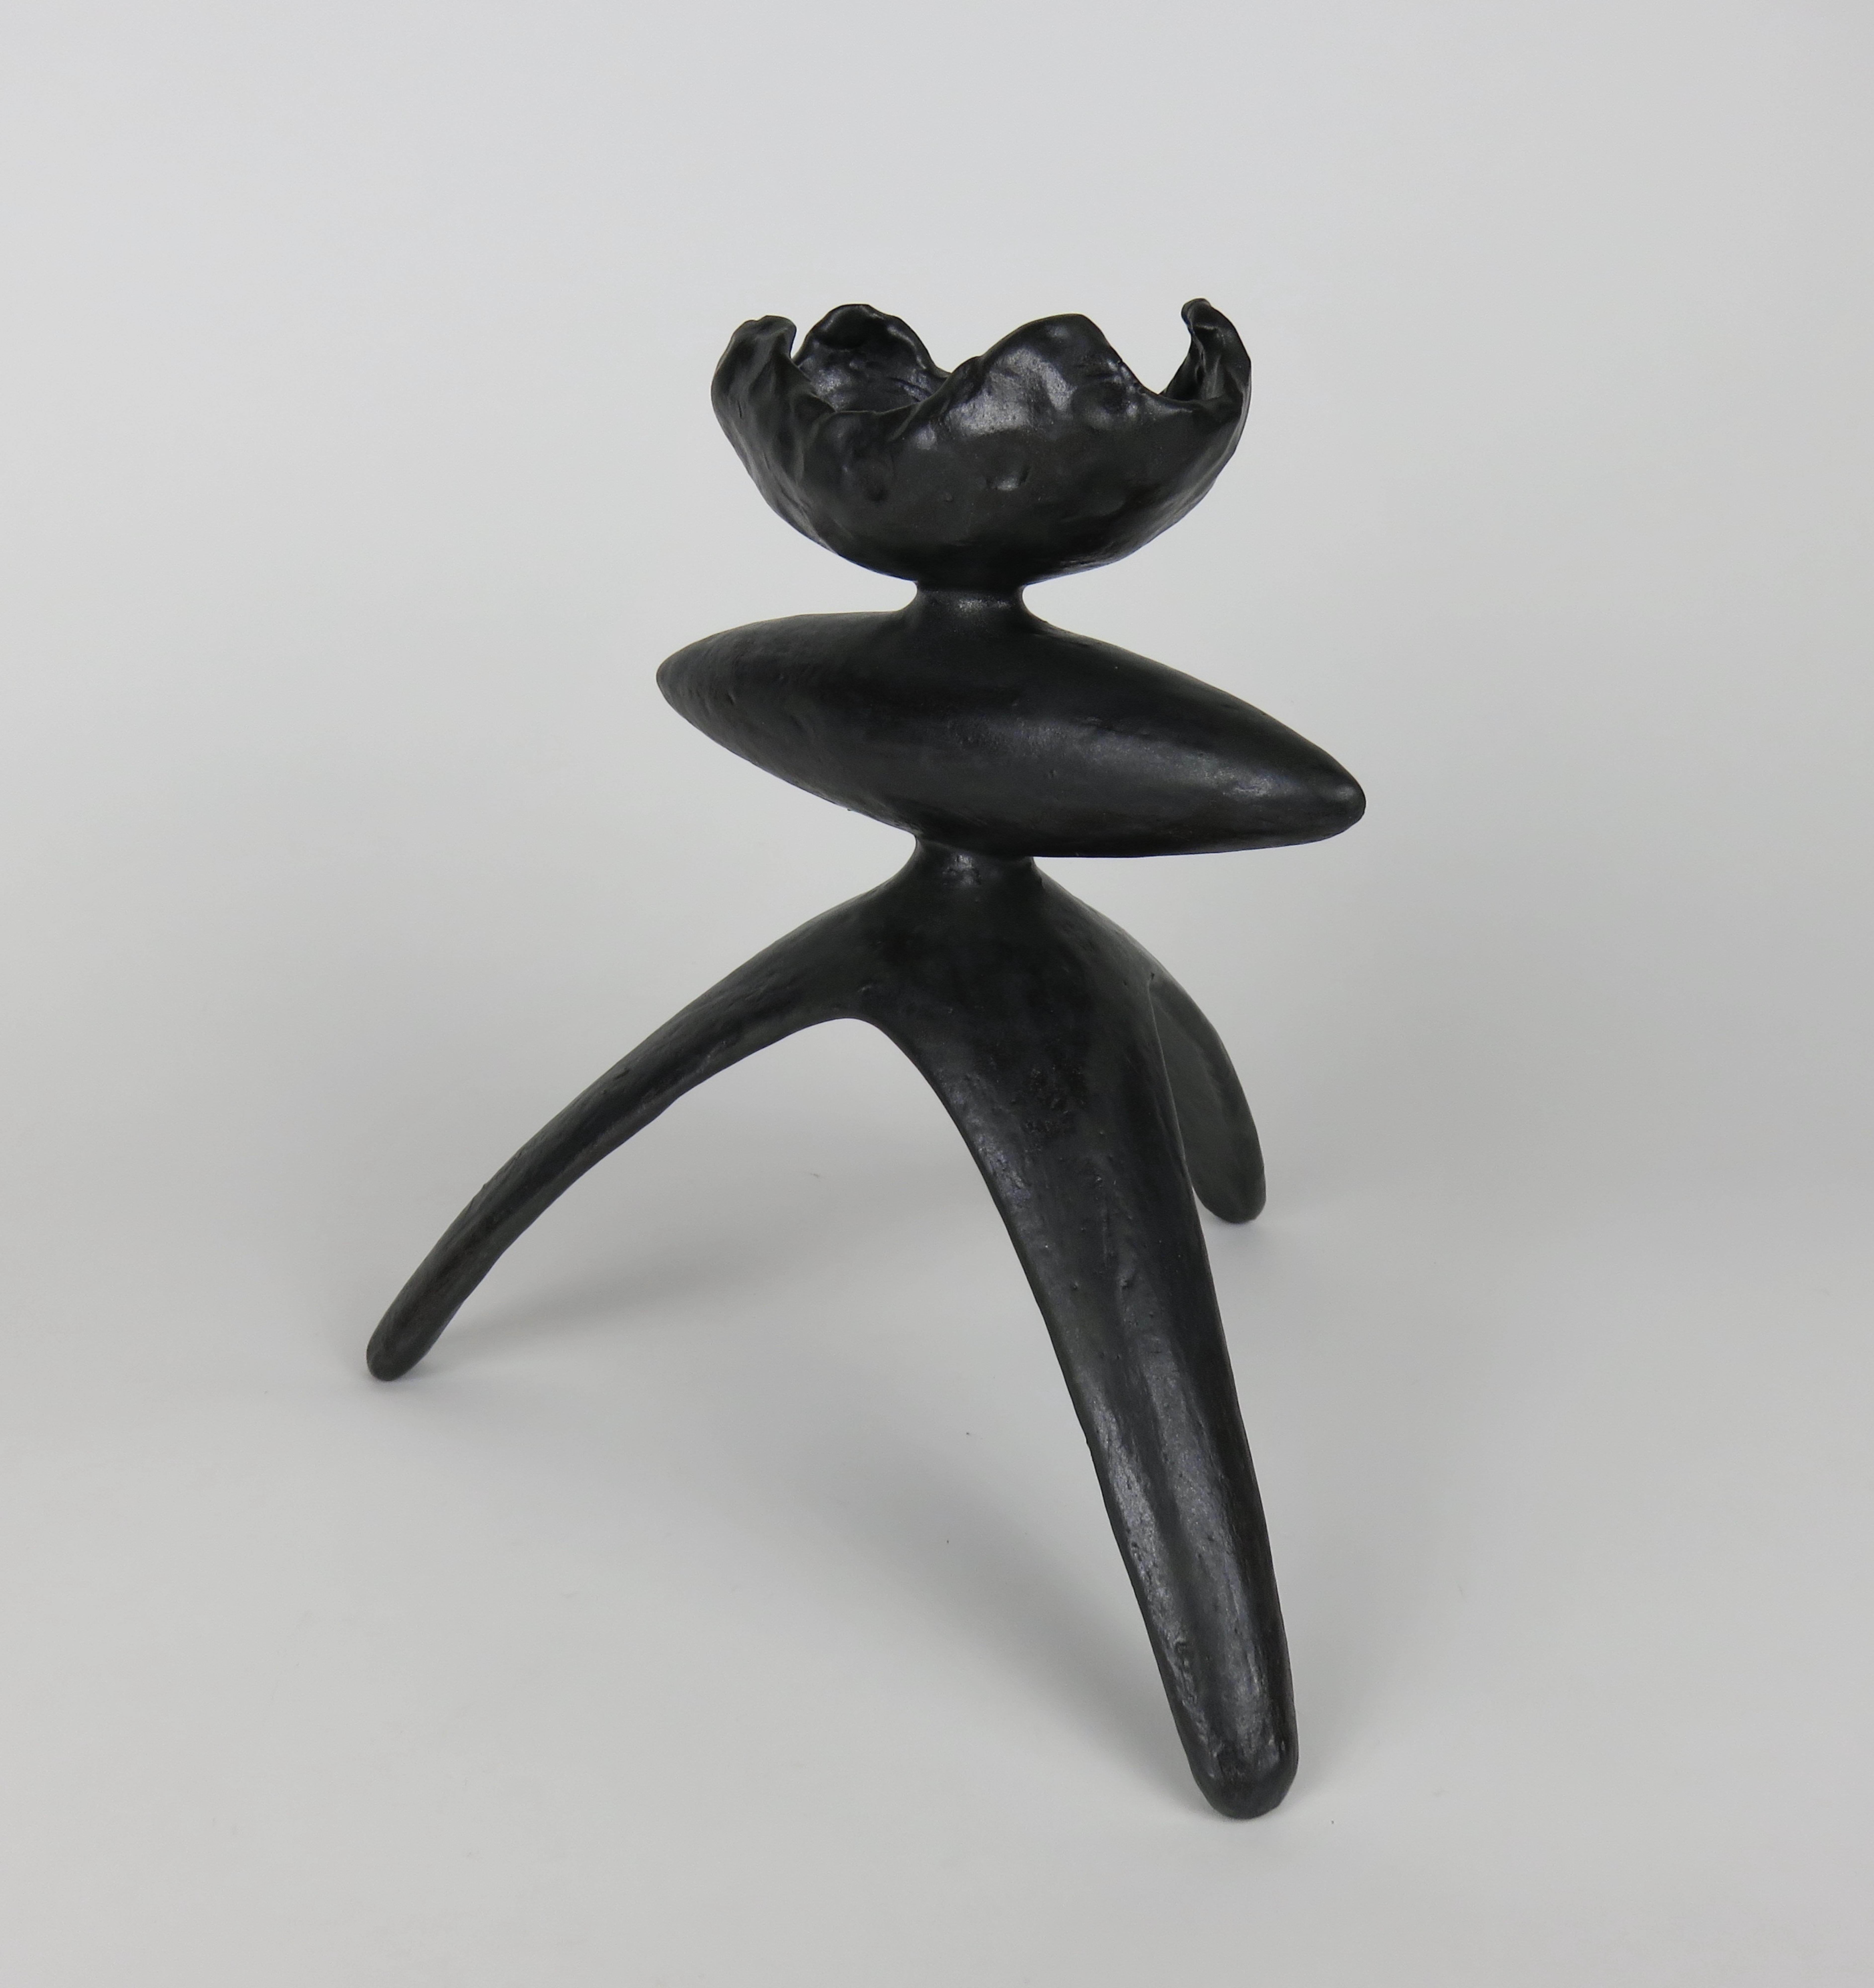 Sculpture en céramique fabriquée à la main avec une glaçure noire mouchetée. Cette pièce, qui fait partie d'une série de TOTEMS modernes, présente un dessus ouvert à courbe ondulée, une forme centrale allongée, des pieds tripodes et une glaçure